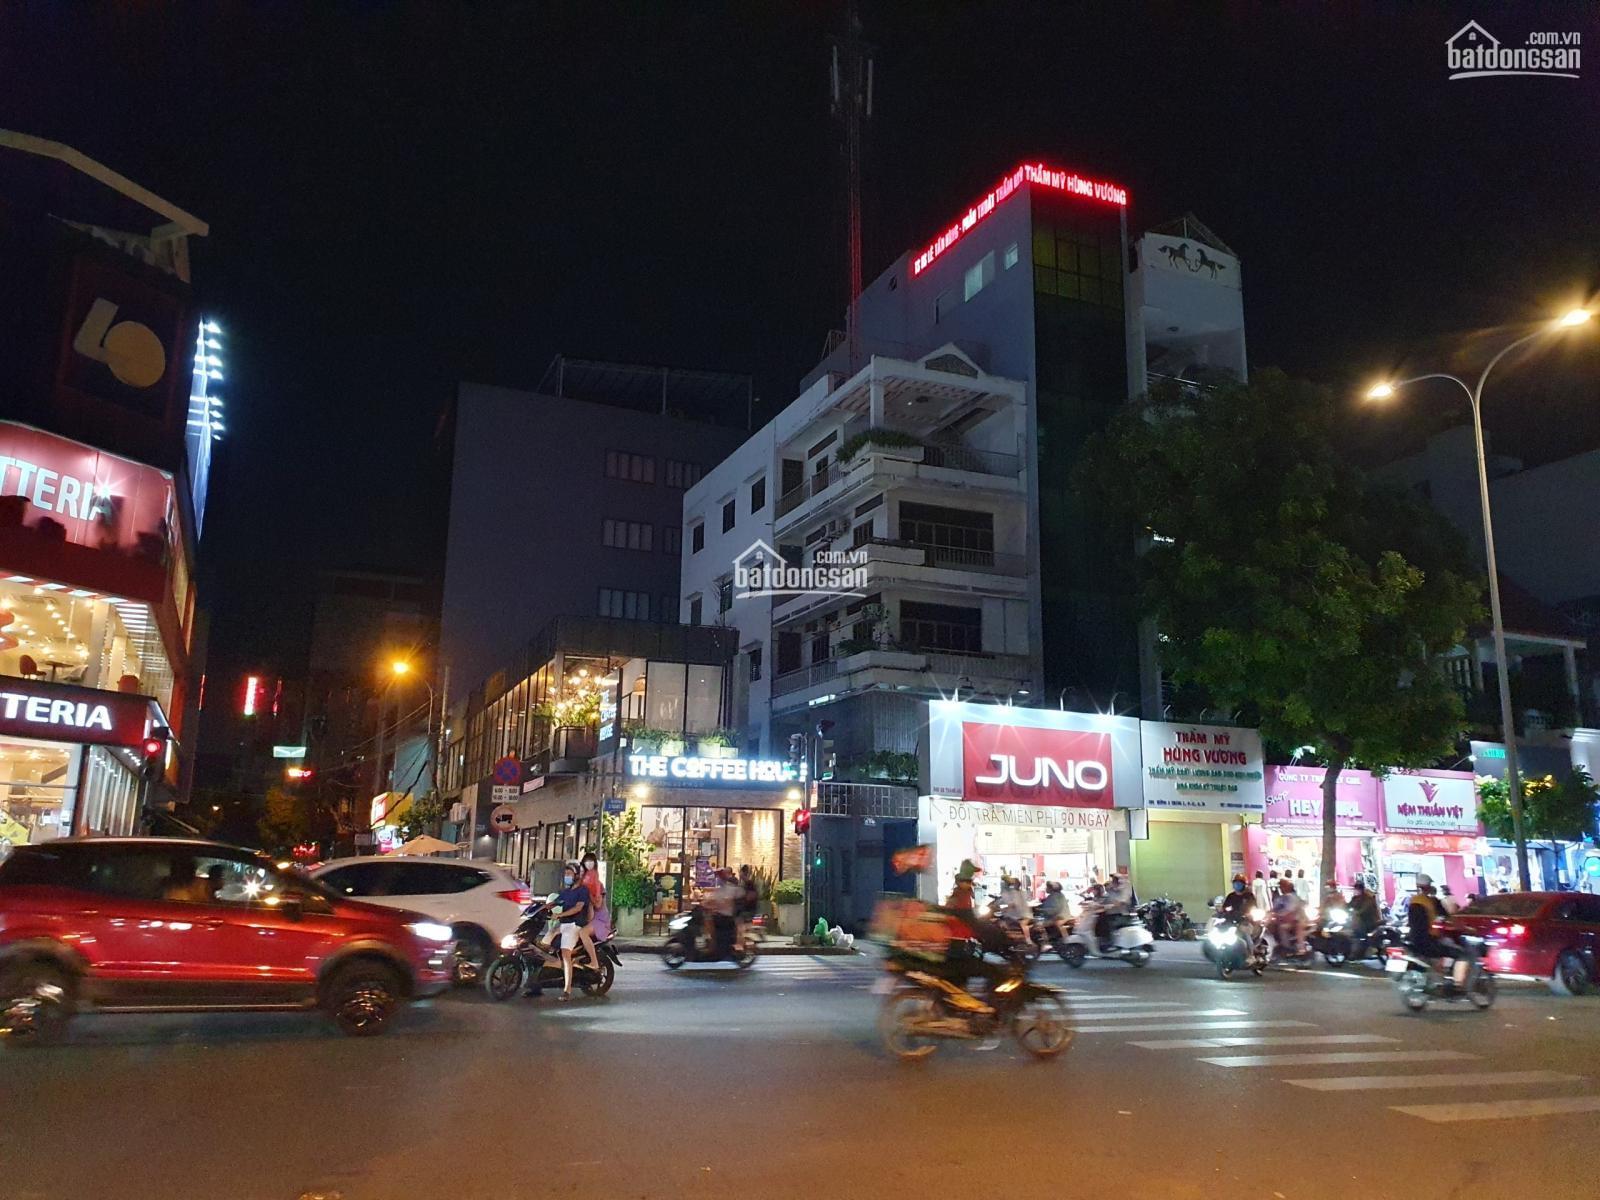 Bán nhà MT đường Trường Chinh ngay lối lên Ga Metro số 2 Nguyễn Hồng Đào, DT: 8m x 30m hết lộ giới.